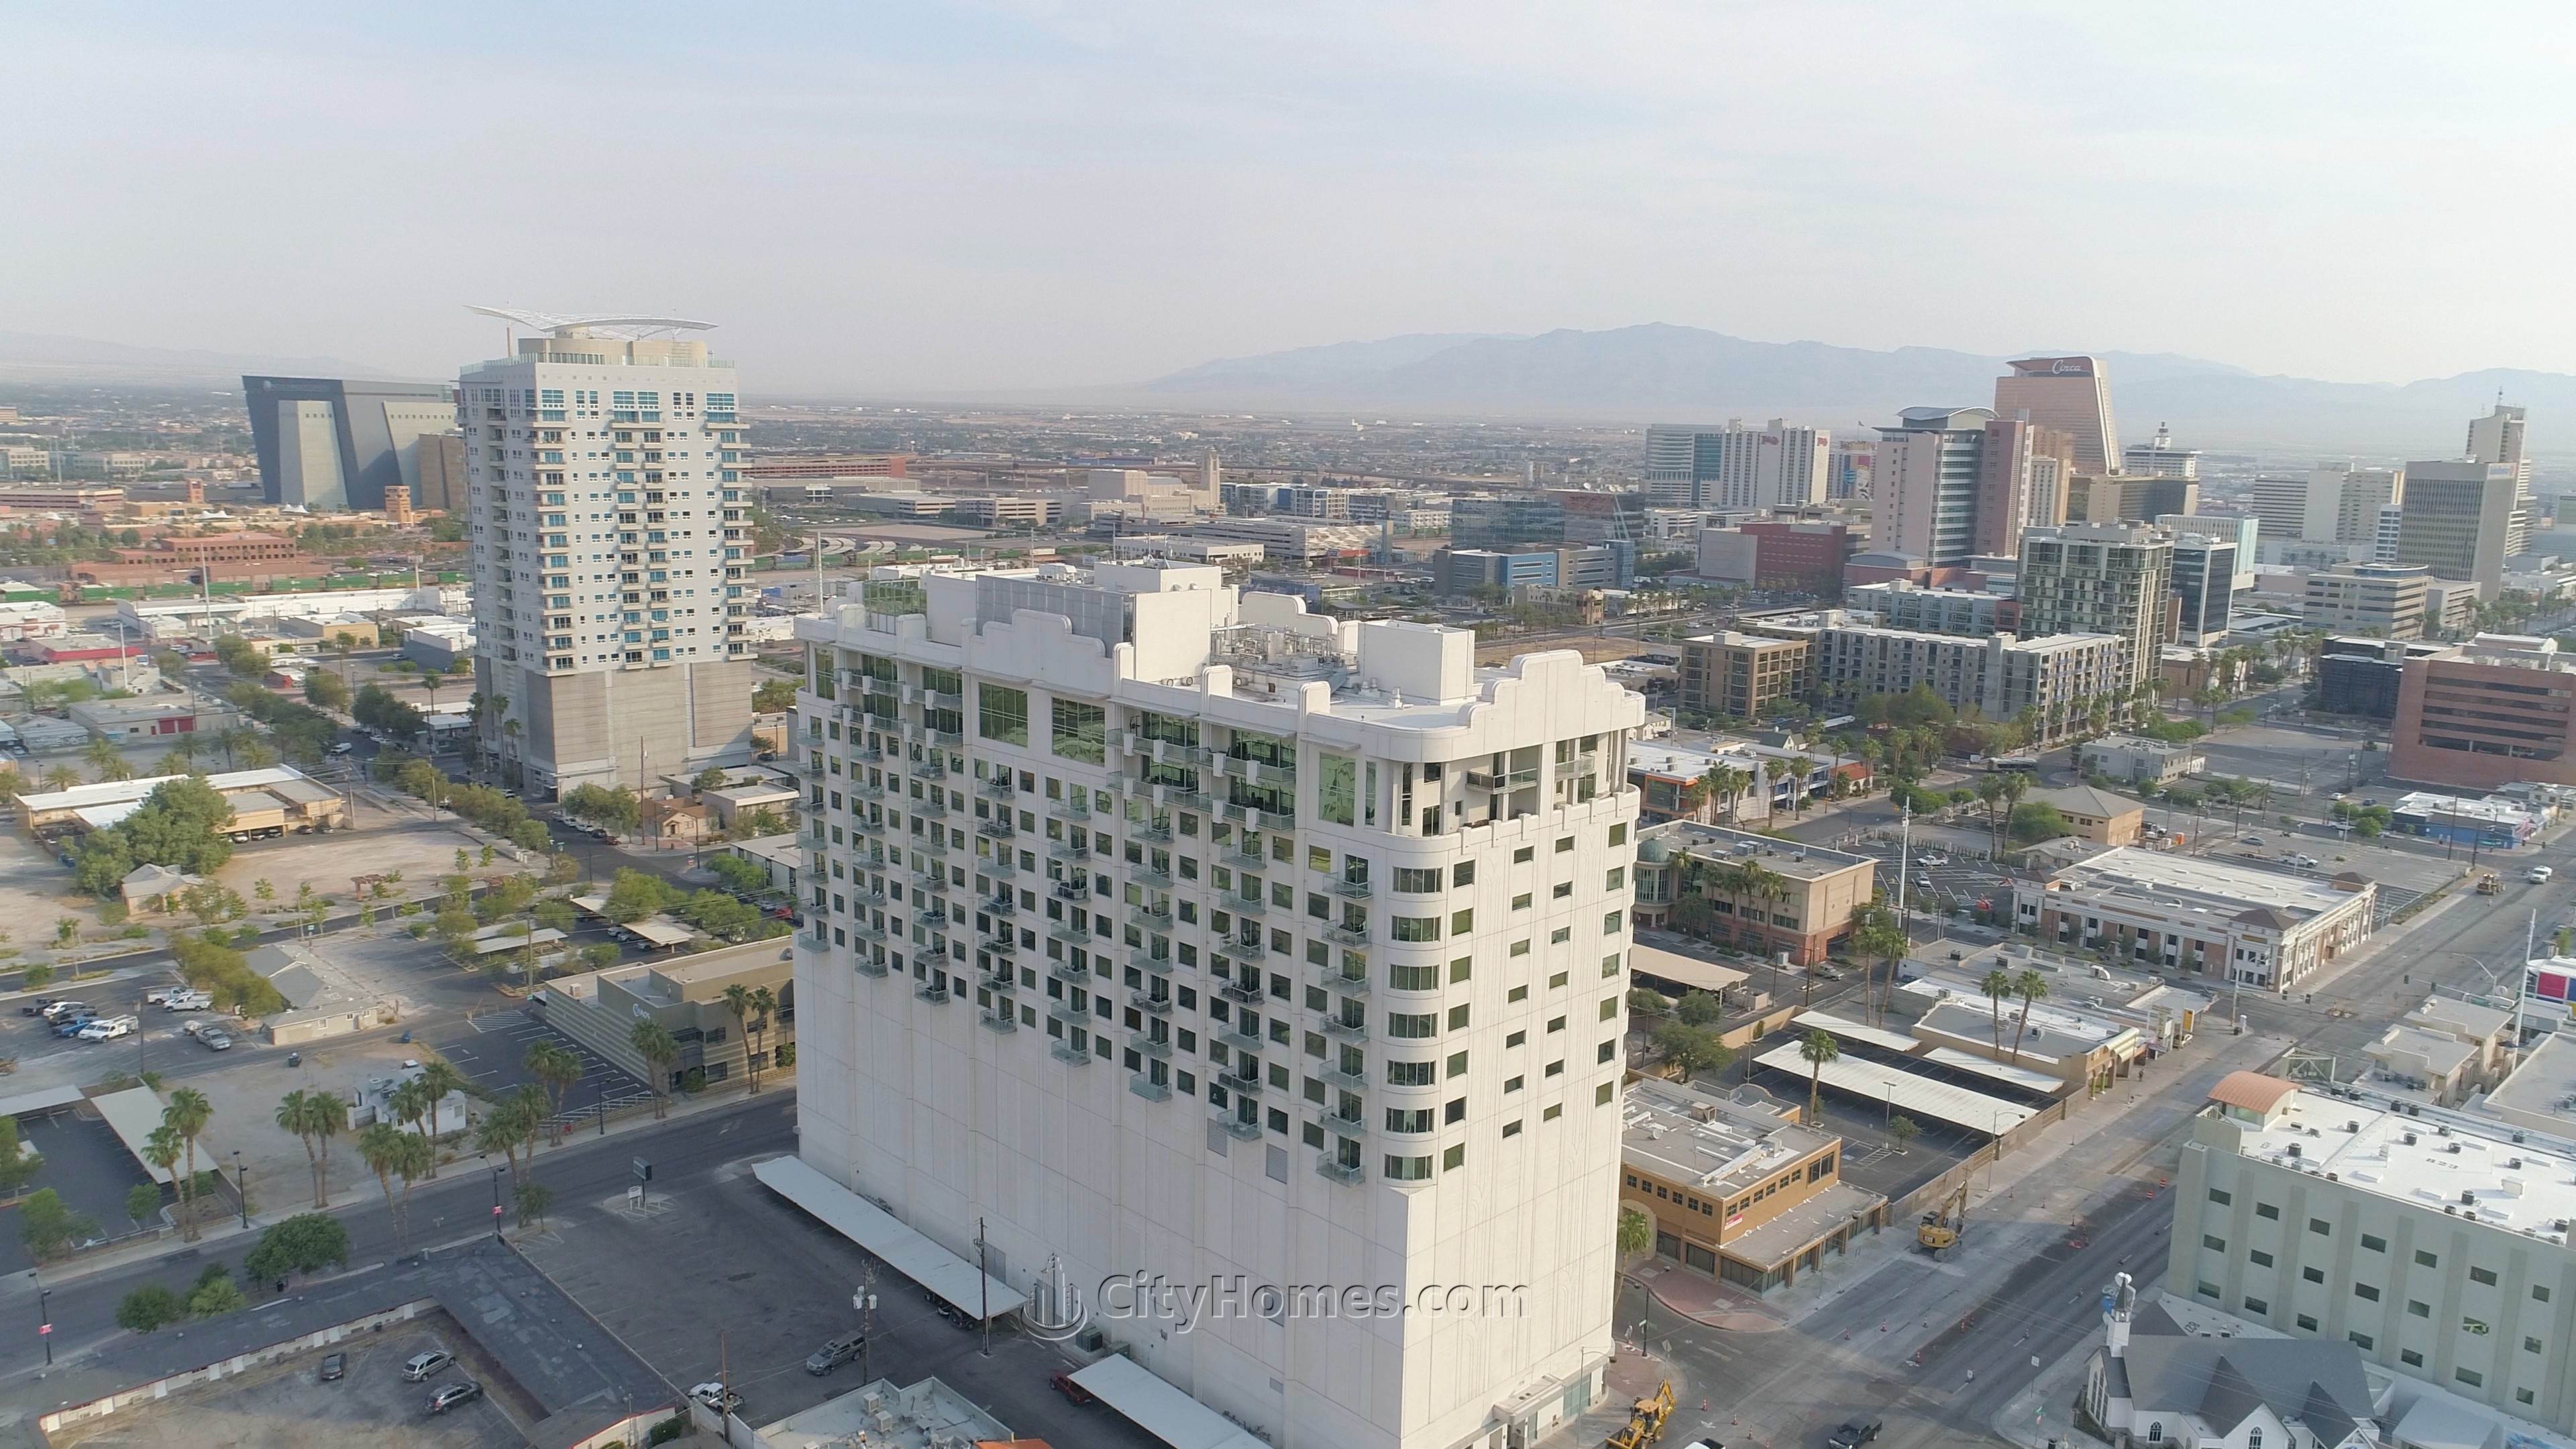 4. Soho Lofts xây dựng tại 900 S Las Vegas Blvd, Las Vegas, NV 89101